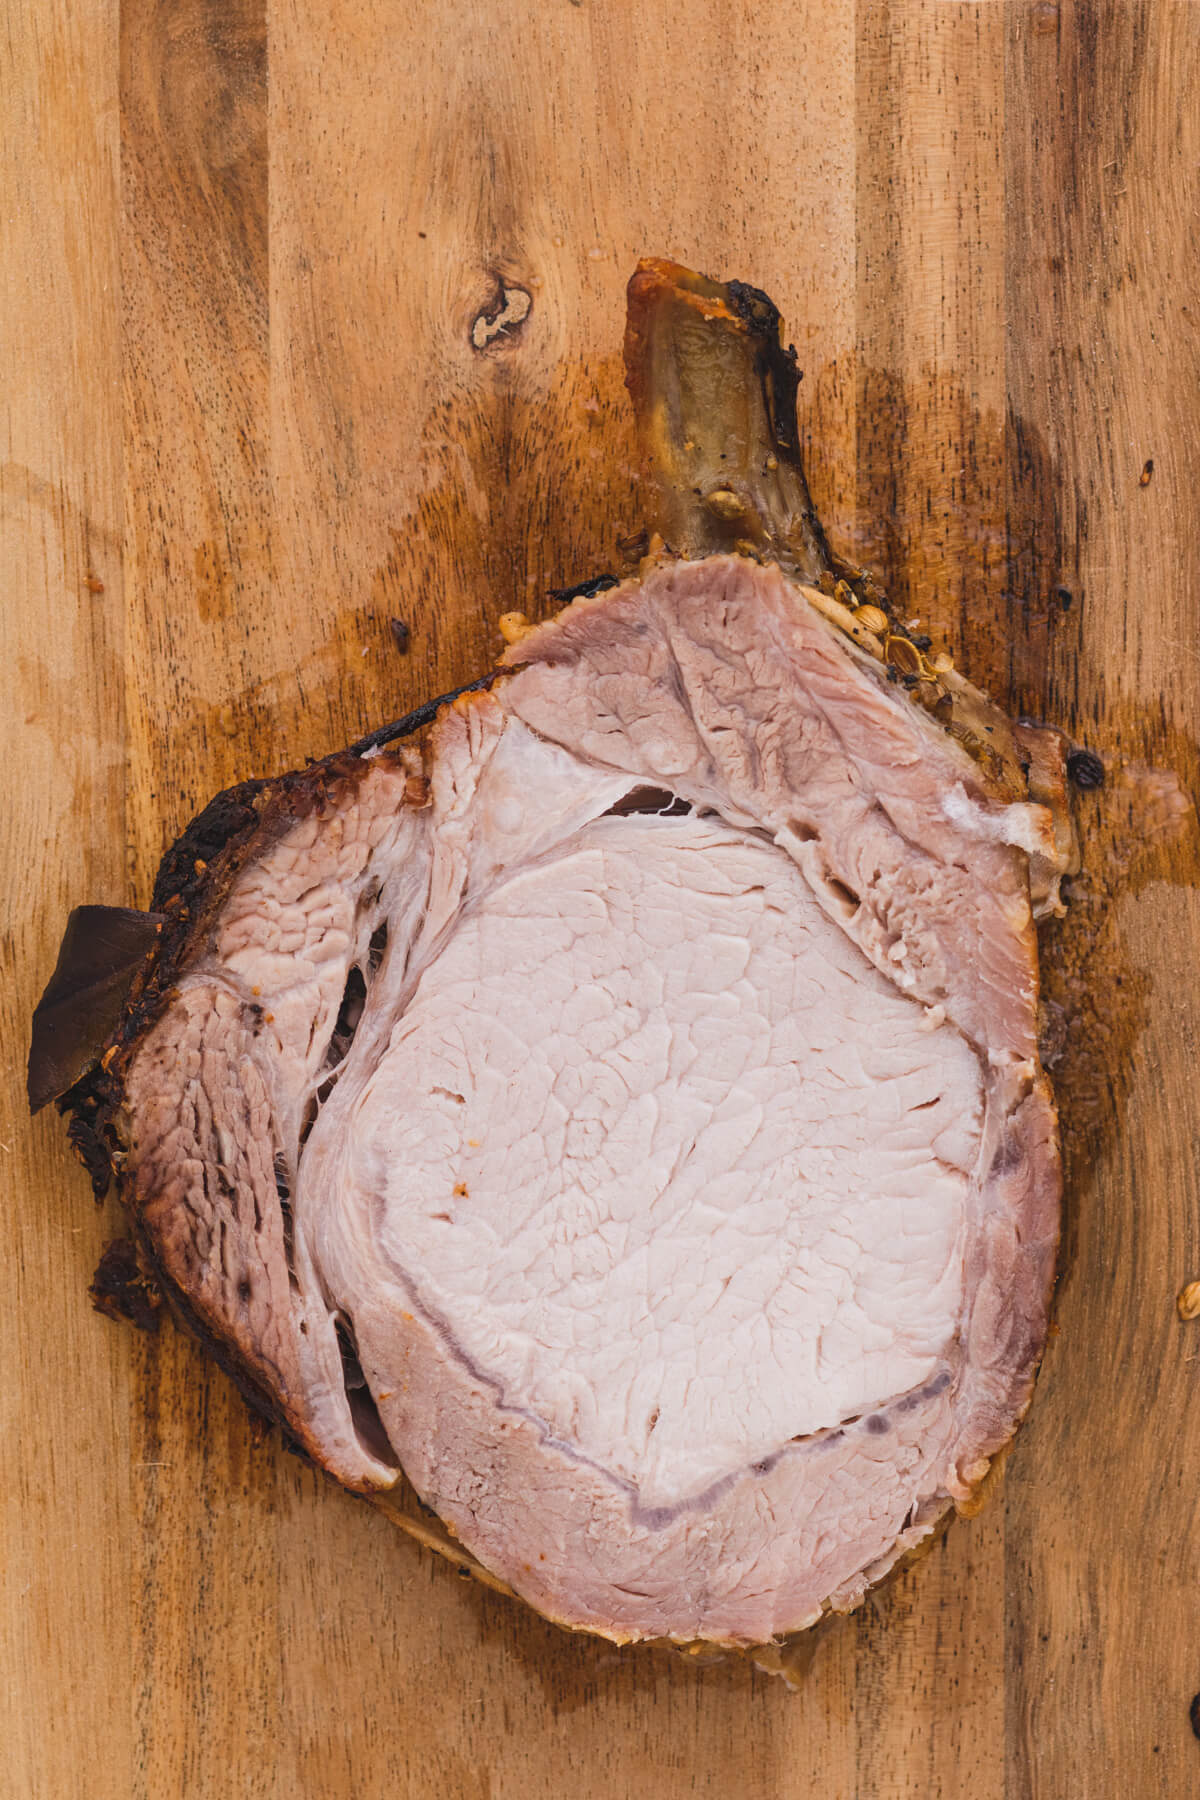 One slice of brined pork rib roast on a wooden cutting board.